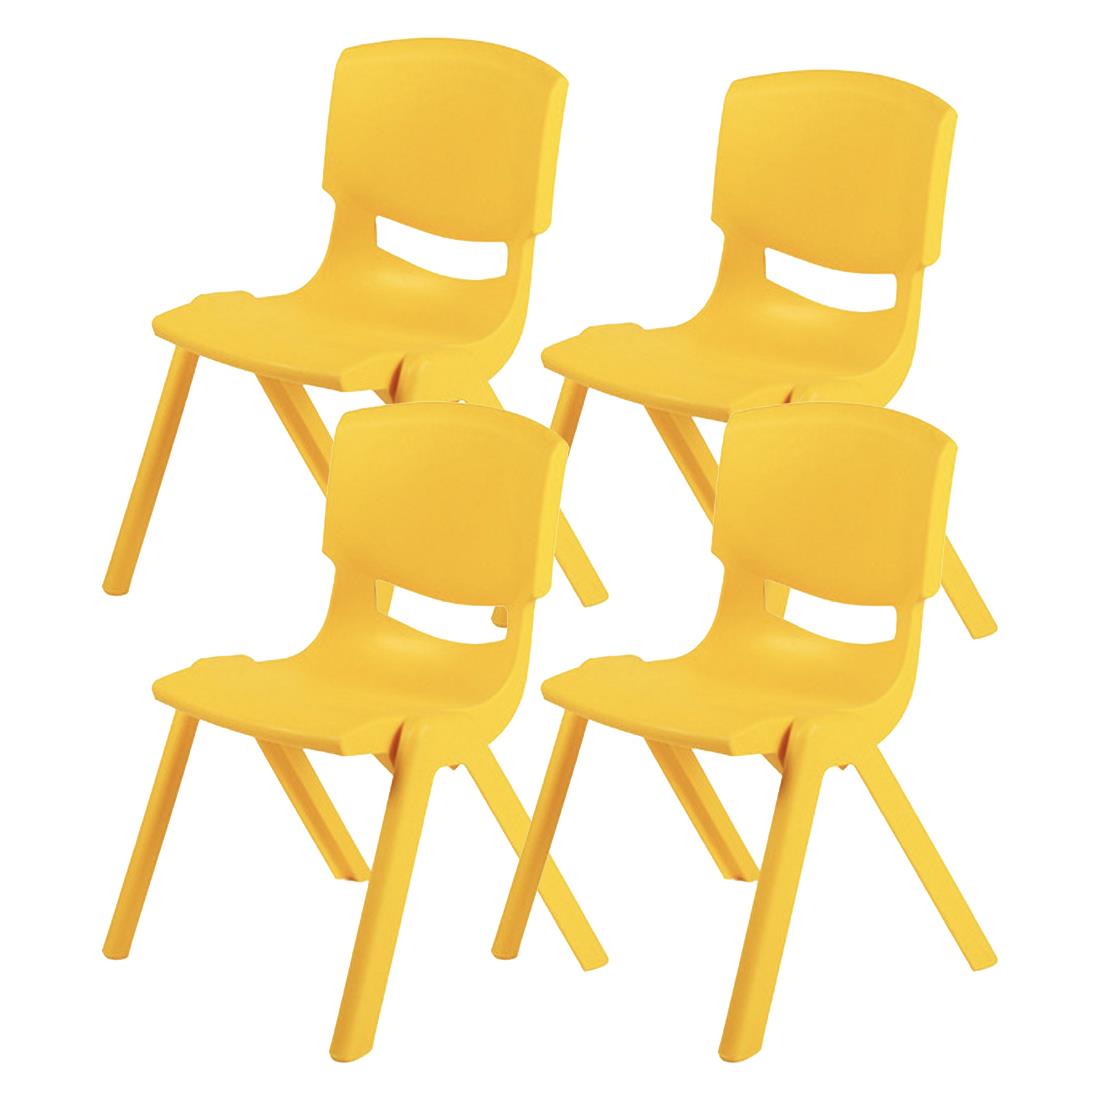 Küçük Şirin Çocuk Sandalyesi Sarı 4lü Paket 1-3 Yaş İçin